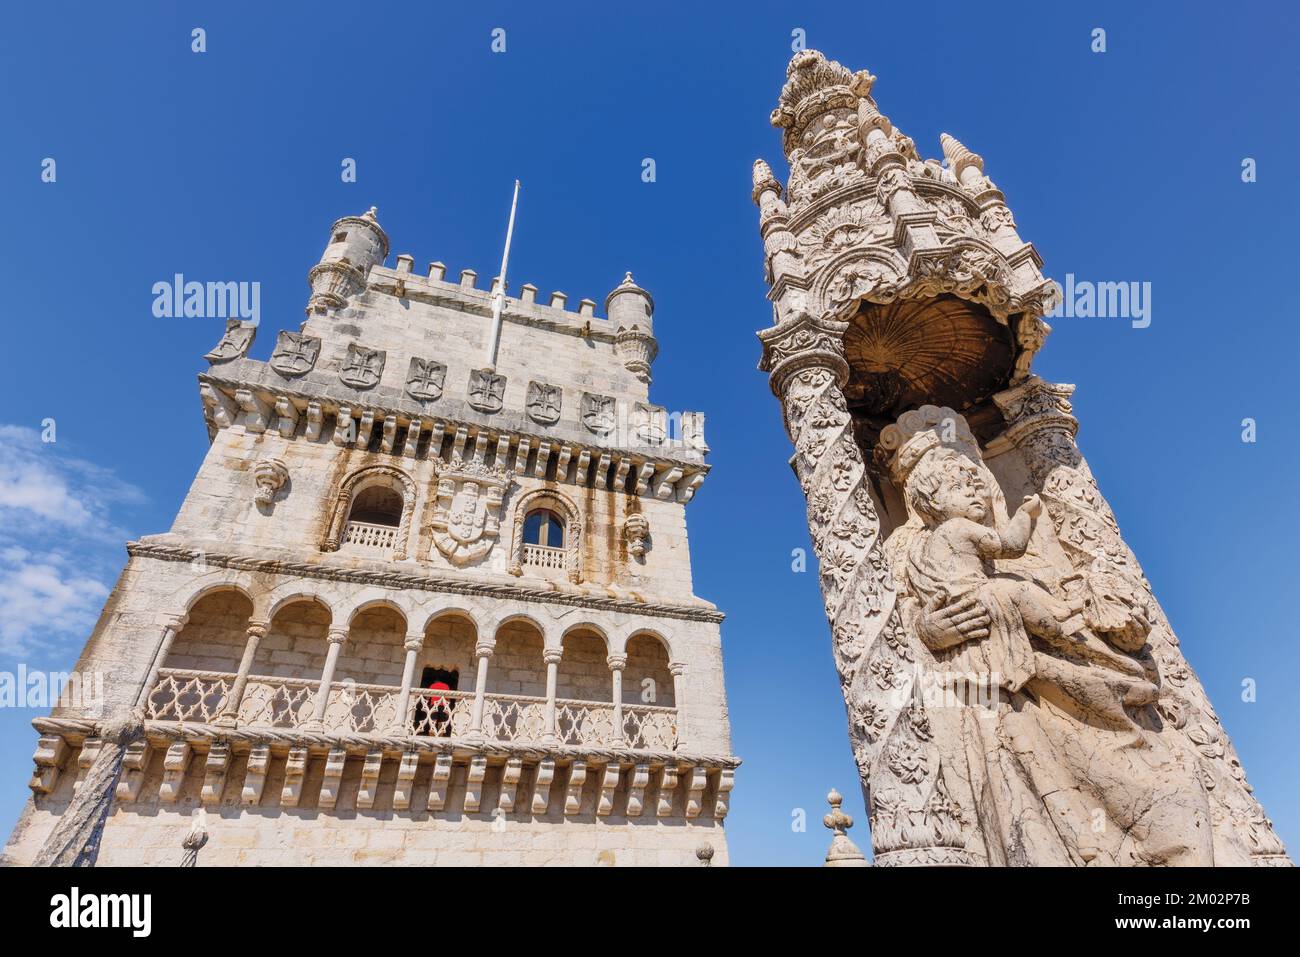 Lisbonne, Portugal. La Torre de Belem datant du 16th siècle ou la Tour de Belem. La tour et l'image de la Vierge à l'enfant sur la terrasse du rempart. Le bâtiment Banque D'Images